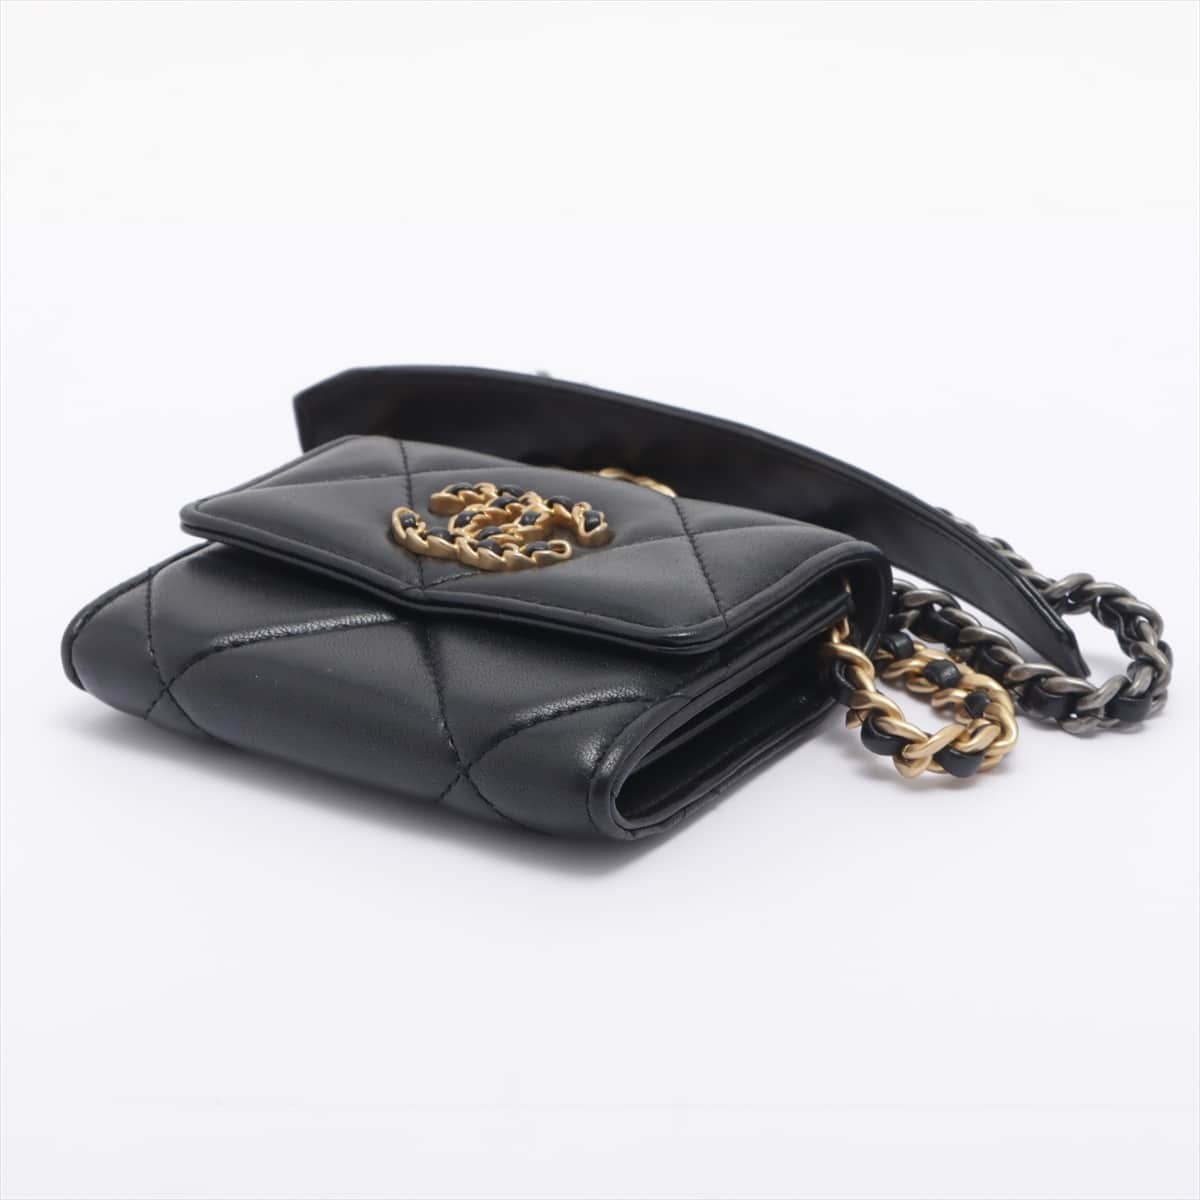 Chanel CHANEL 19 Lambskin Chain wallet Card case Black Gold Metal fittings 30